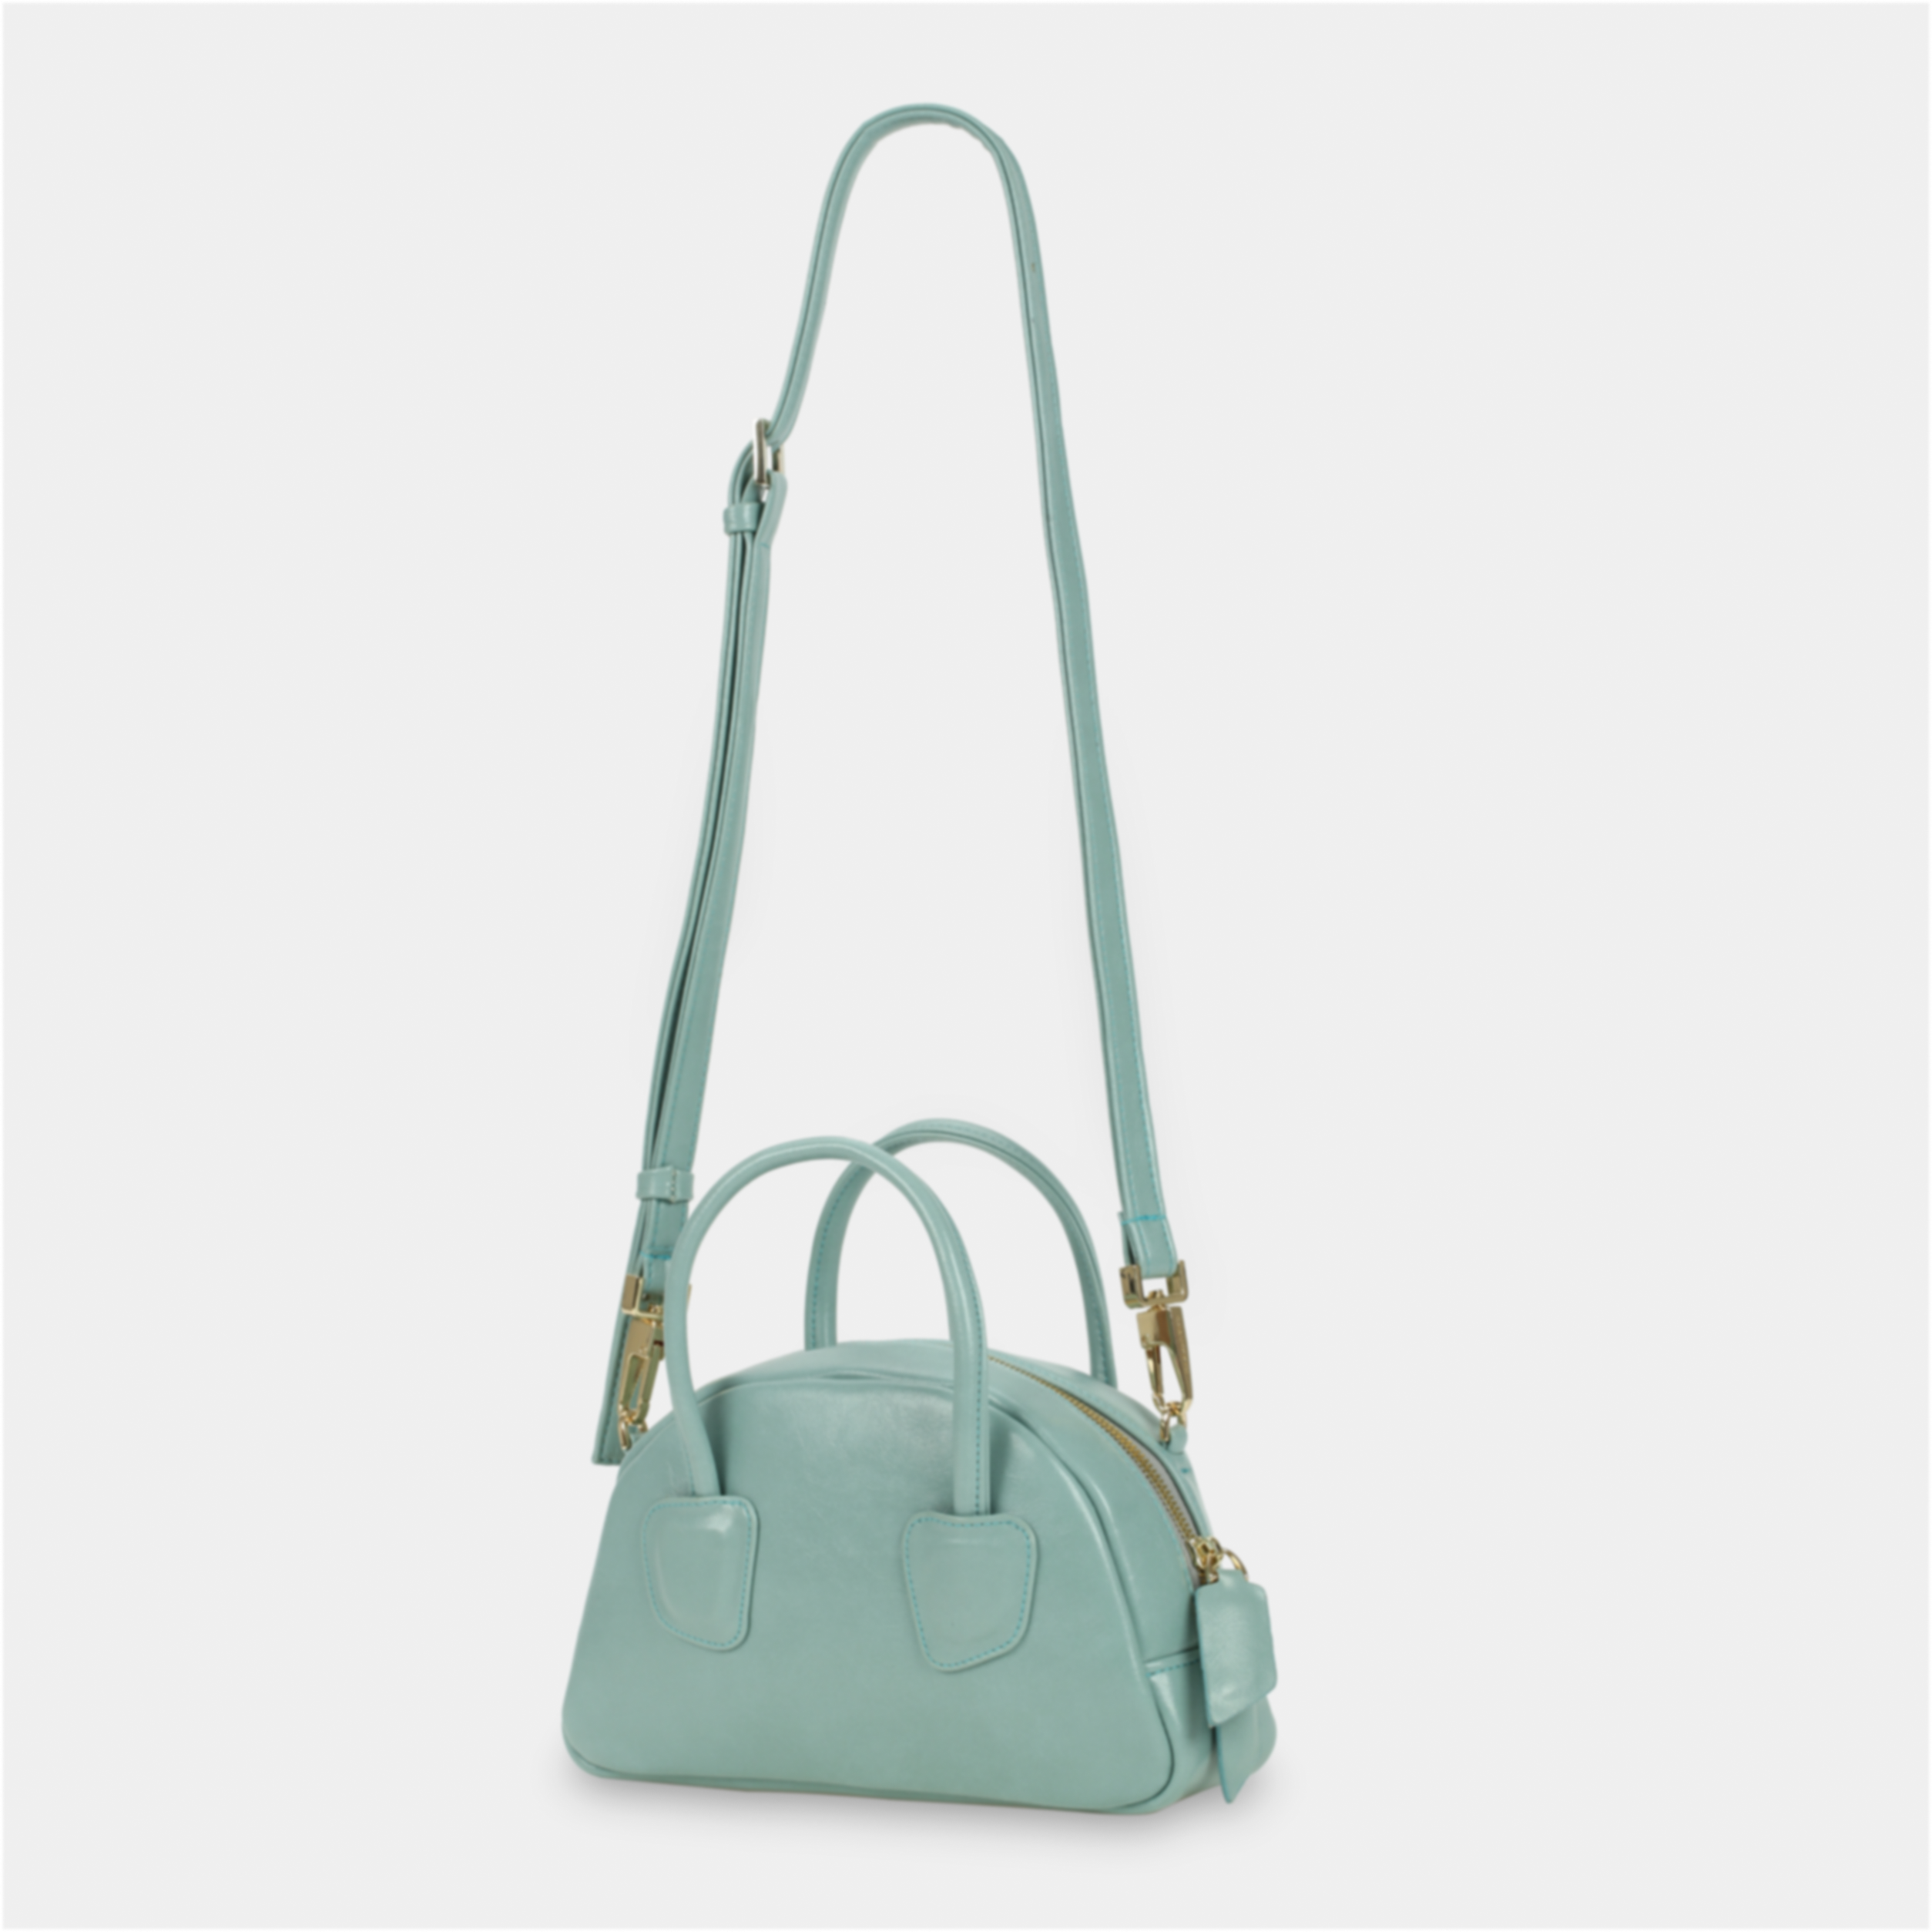 TACOS handbag in pastel blue color large size (M)